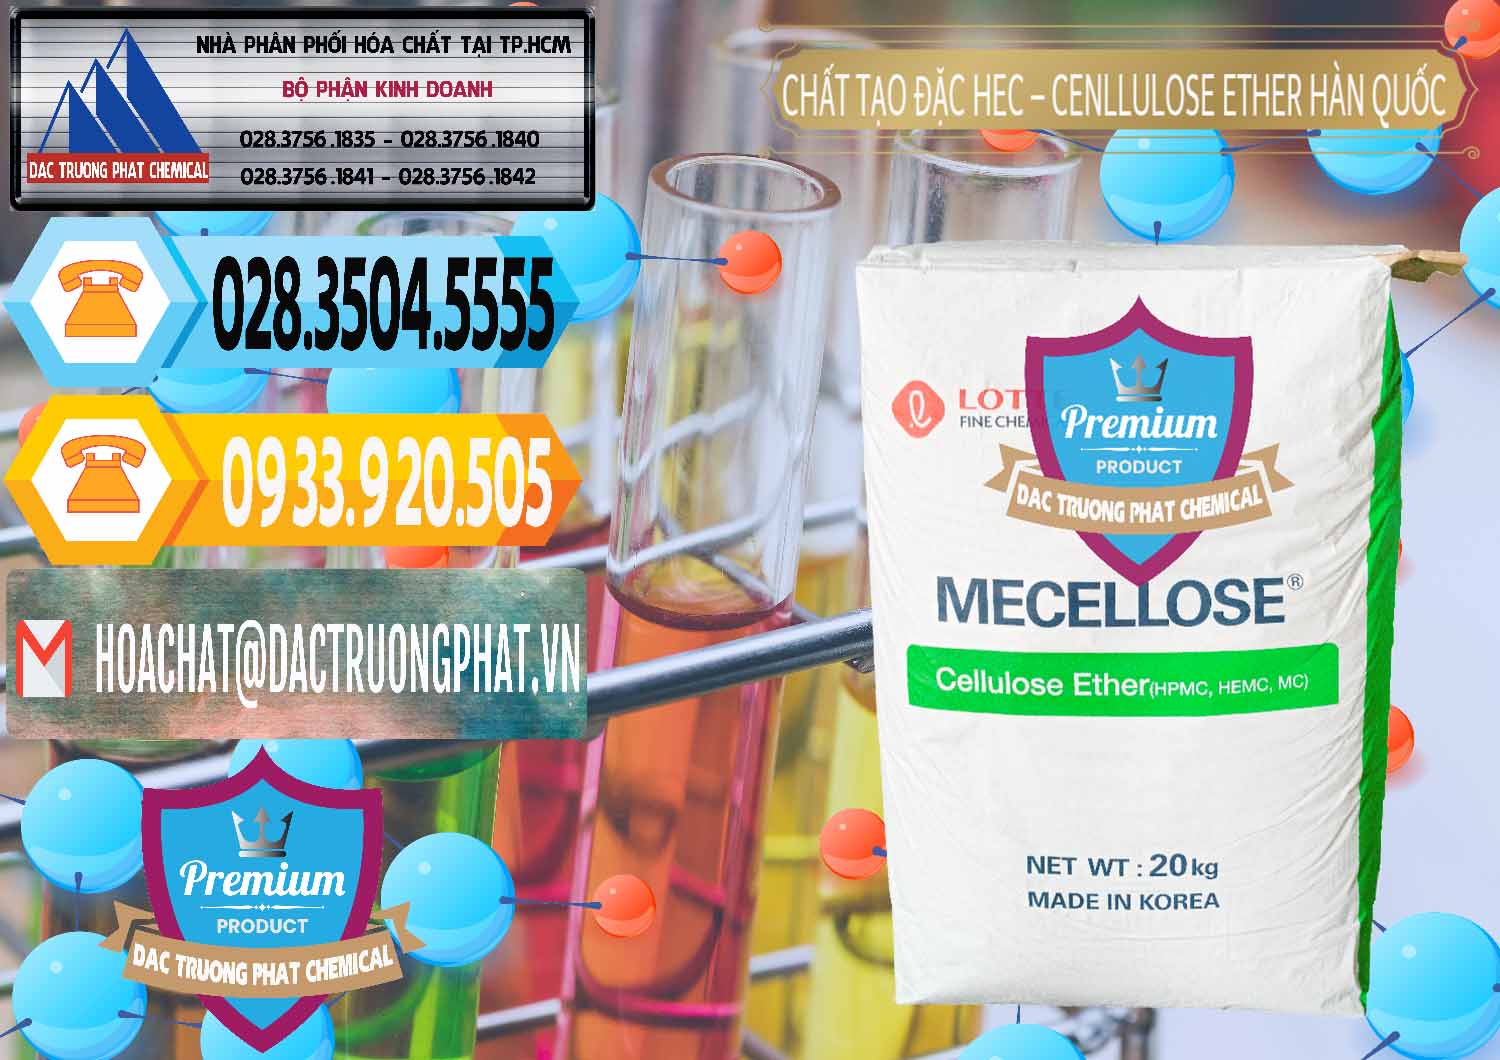 Cty bán ( phân phối ) Chất Tạo Đặc Hec Mecellose – Cenllulose Ether Lotte Hàn Quốc Korea - 0050 - Công ty nhập khẩu ( cung cấp ) hóa chất tại TP.HCM - hoachattayrua.net